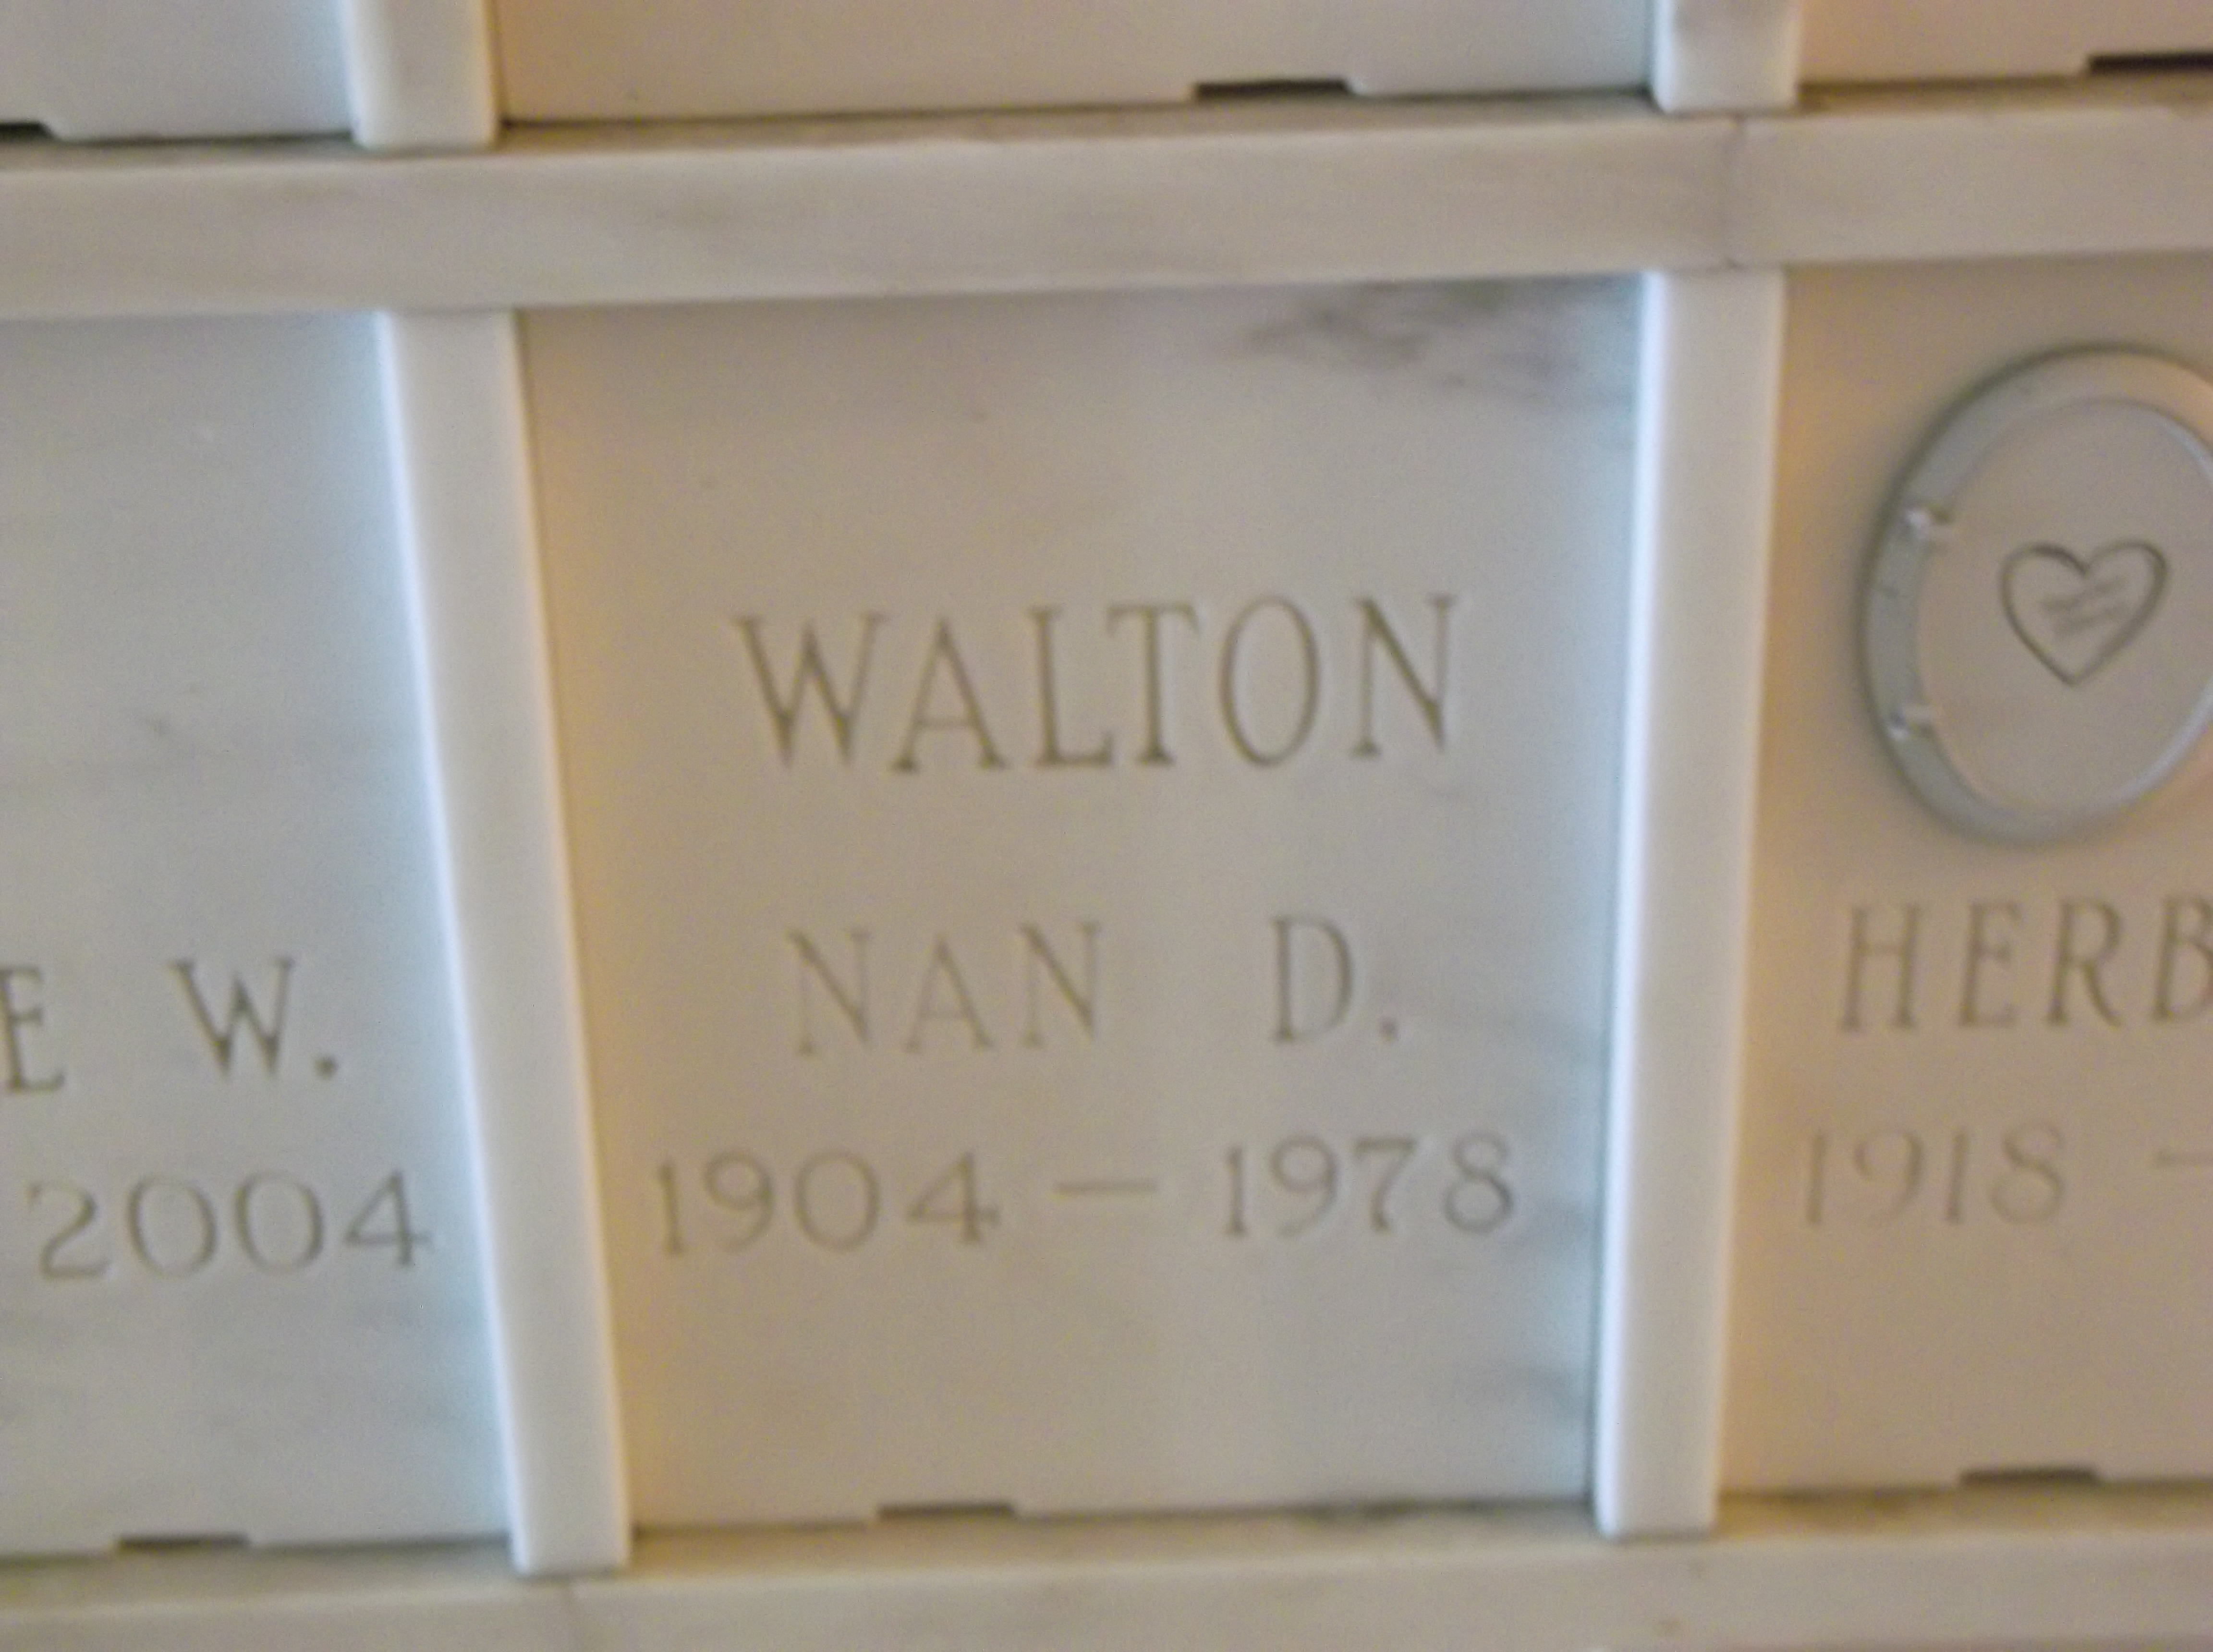 Nan D Walton